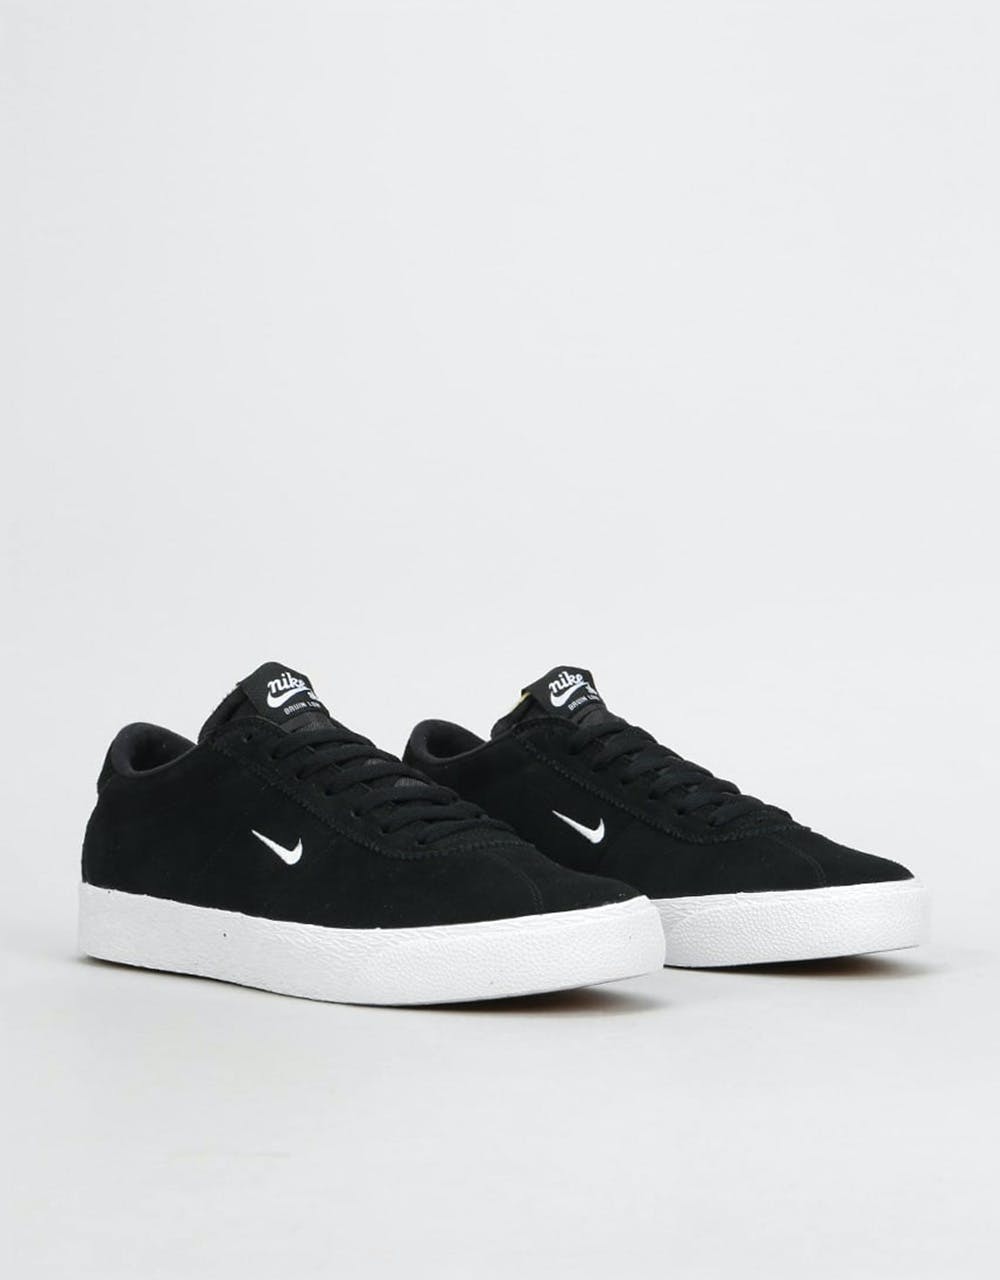 Nike SB Zoom Bruin Ultra Skate Shoes - Black/White-Gum Light Brown